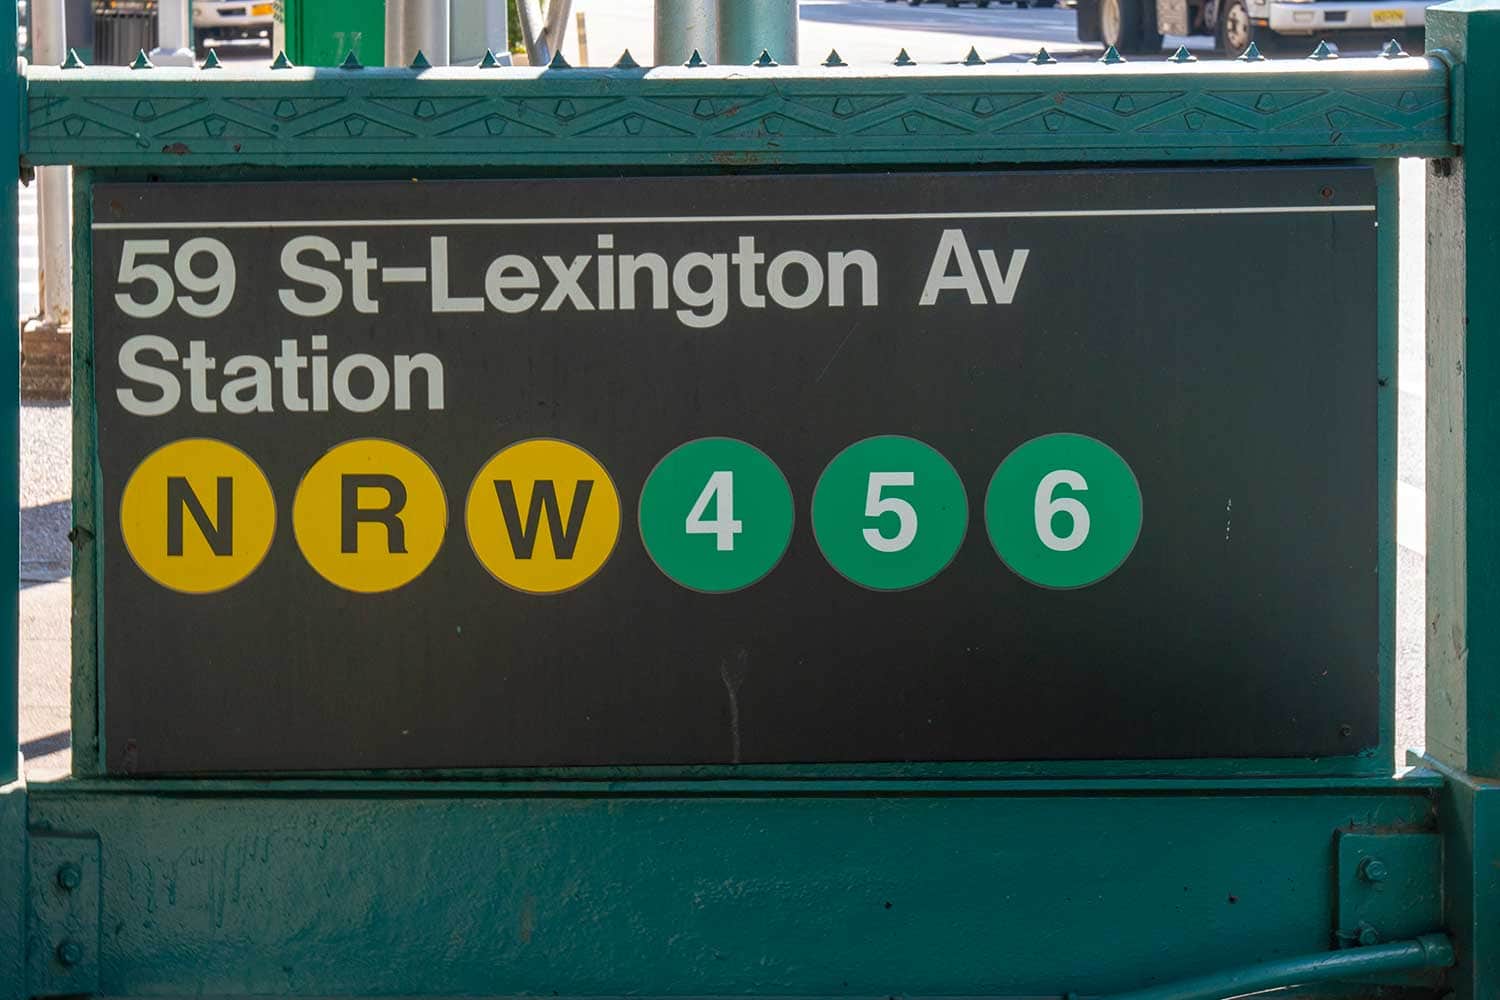 9 St- Lexington Av Station providing easy transportation for tenants of 695 Lexington